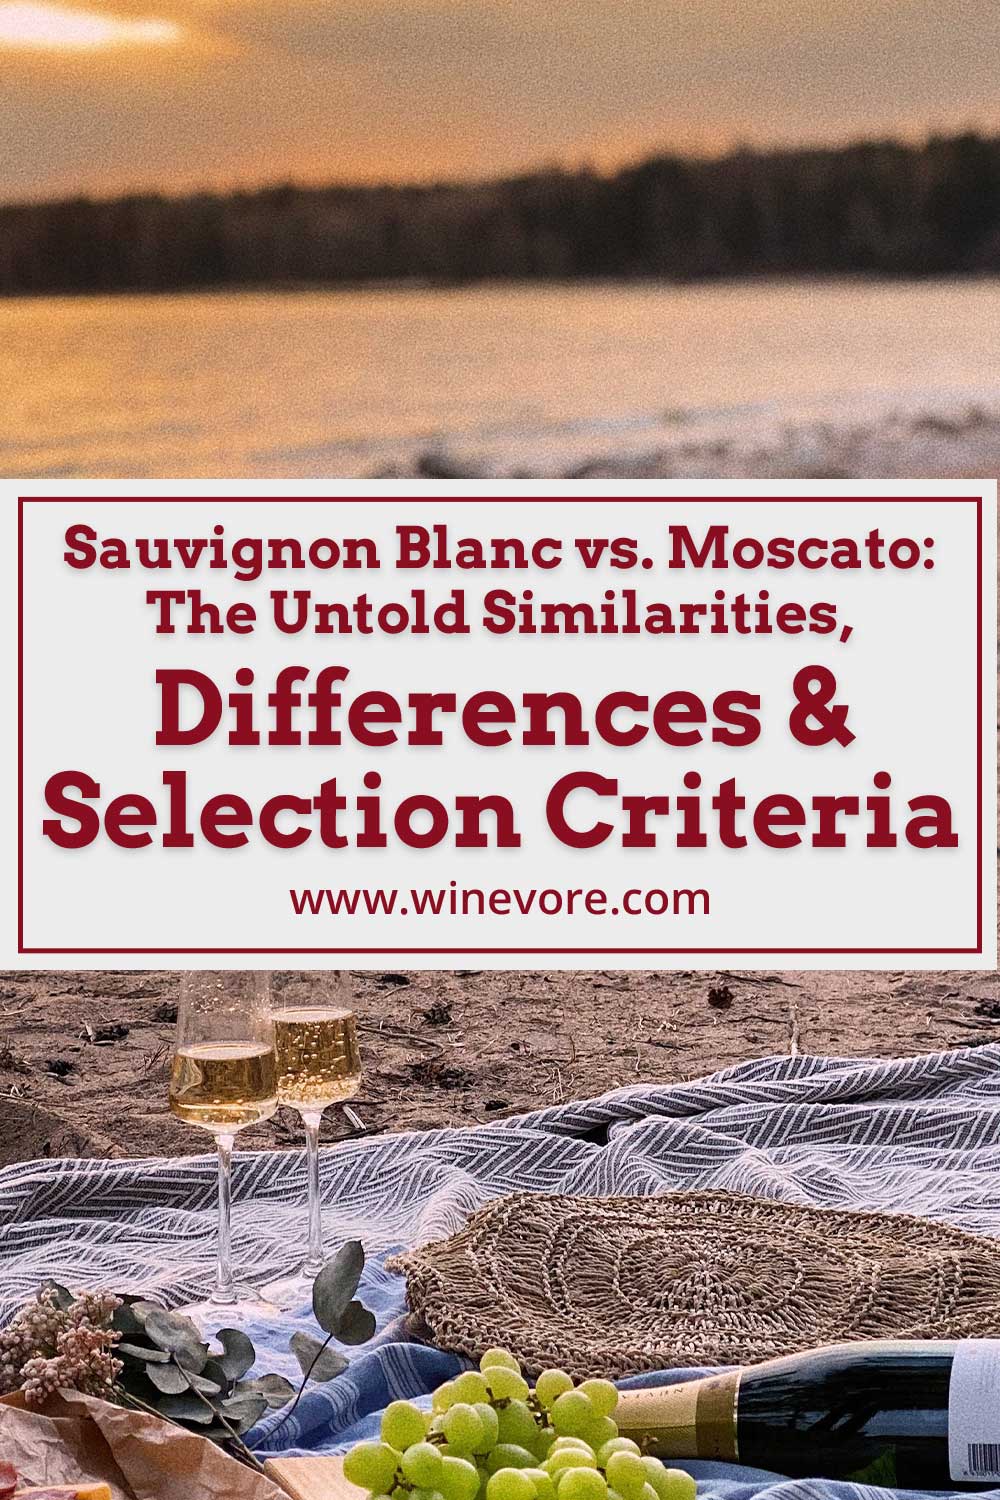 Wine glasses, grapes, bottle on a cloth in a beach - Sauvignon Blanc vs. Moscato.